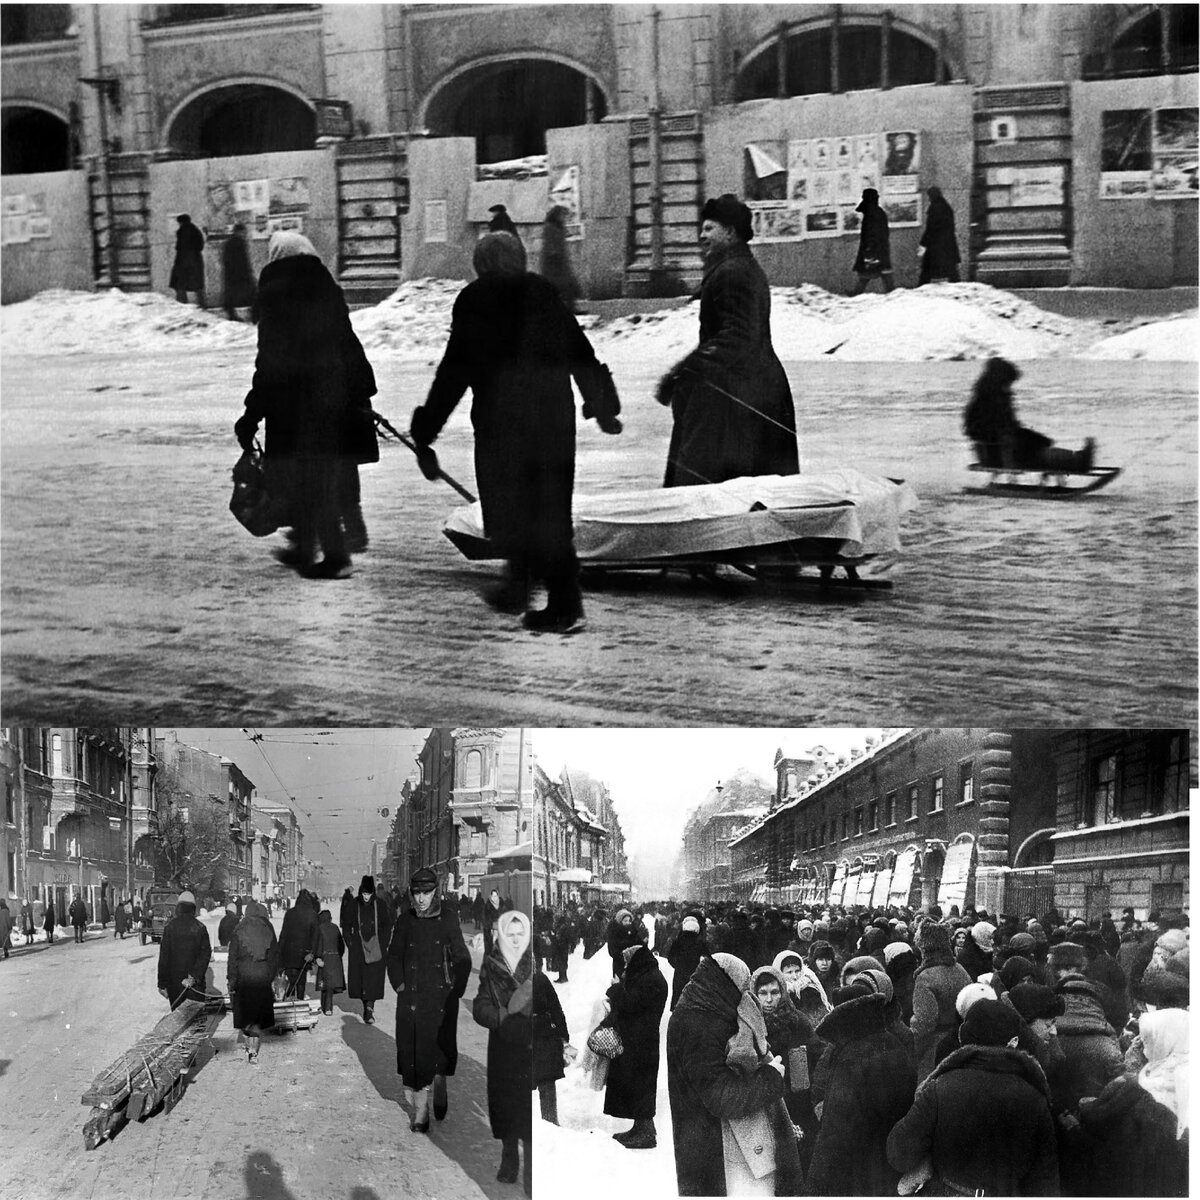   Блокада Ленинграда в период Великой Отечественной войны была одной из самых трагических страниц в истории советской России.-2